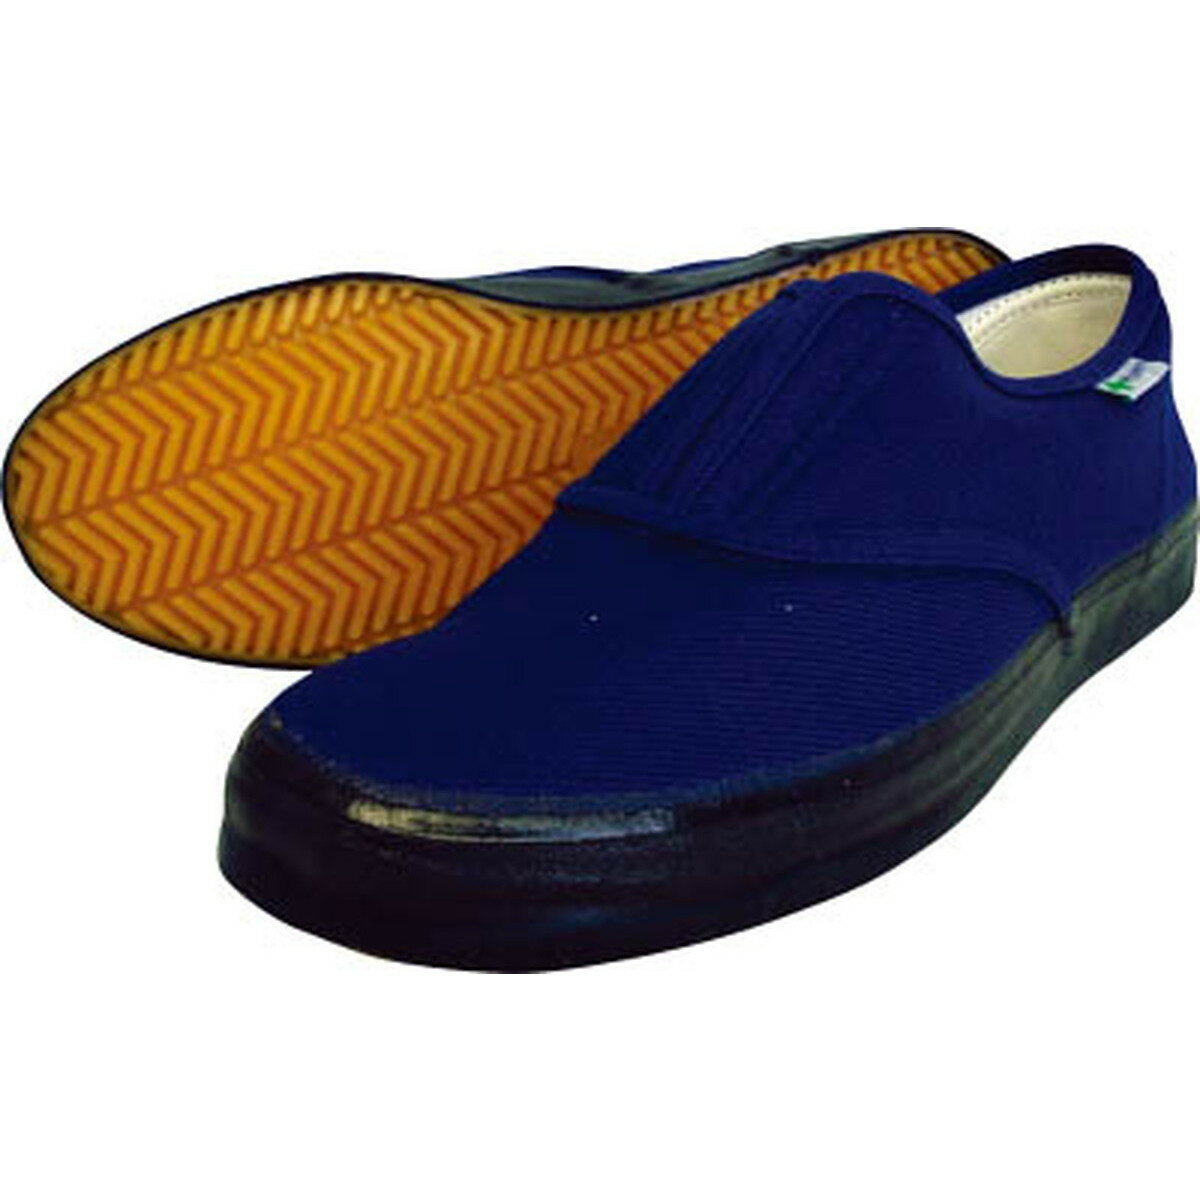 【特徴】 ・足袋の履き心地を再現した作業靴「たびぐつ」に防滑性能を誇るハイパーVソールを搭載した作業靴です。 ・底が柔らかく屈曲性バツグンです。 ・汎用性の高い、甲ゴムタイプのスリッポンデザインです。 ・アッパーには通気性・耐久性に優れた綿布を使用しています。 ・様々な用途にお使いいただけます。 【仕様】 ・商品名：ハイパーV たびぐつ #1000 ・カラー：紺 ・先芯：無し ・アッパー材：綿 ・底材：合成ゴム（ハイパーV） ・平均重量：272g（26.0cm片足） ・日進ゴムのハイパーVたびぐつ#1000等。その他の履物も多数取扱っております。【ご購入前にご確認ください】※沖縄・離島、その他一部地域からのご注文はお受けできません。システムの都合上ご注文は可能ですが、自動キャンセルになりますのでご了承ください。※当店ではのし・ラッピング梱包は承っておりません。※お客様都合でのキャンセル及び返品・交換は受け付けておりません。あらかじめご了承の上、ご注文ください。